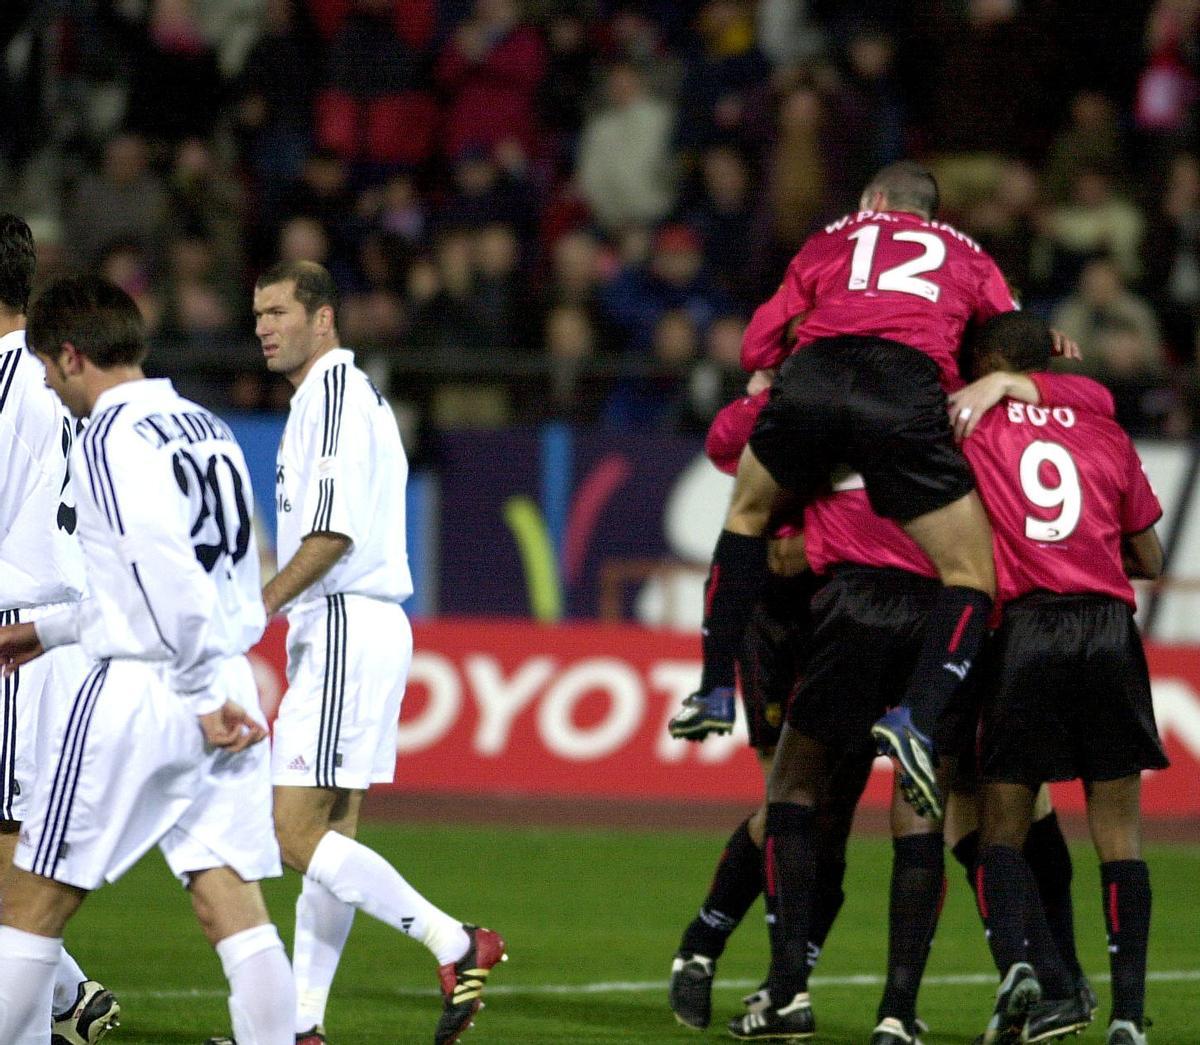 El Mallorca vapuleó al Real Madrid en Son Moix con un 4-0 (2003)